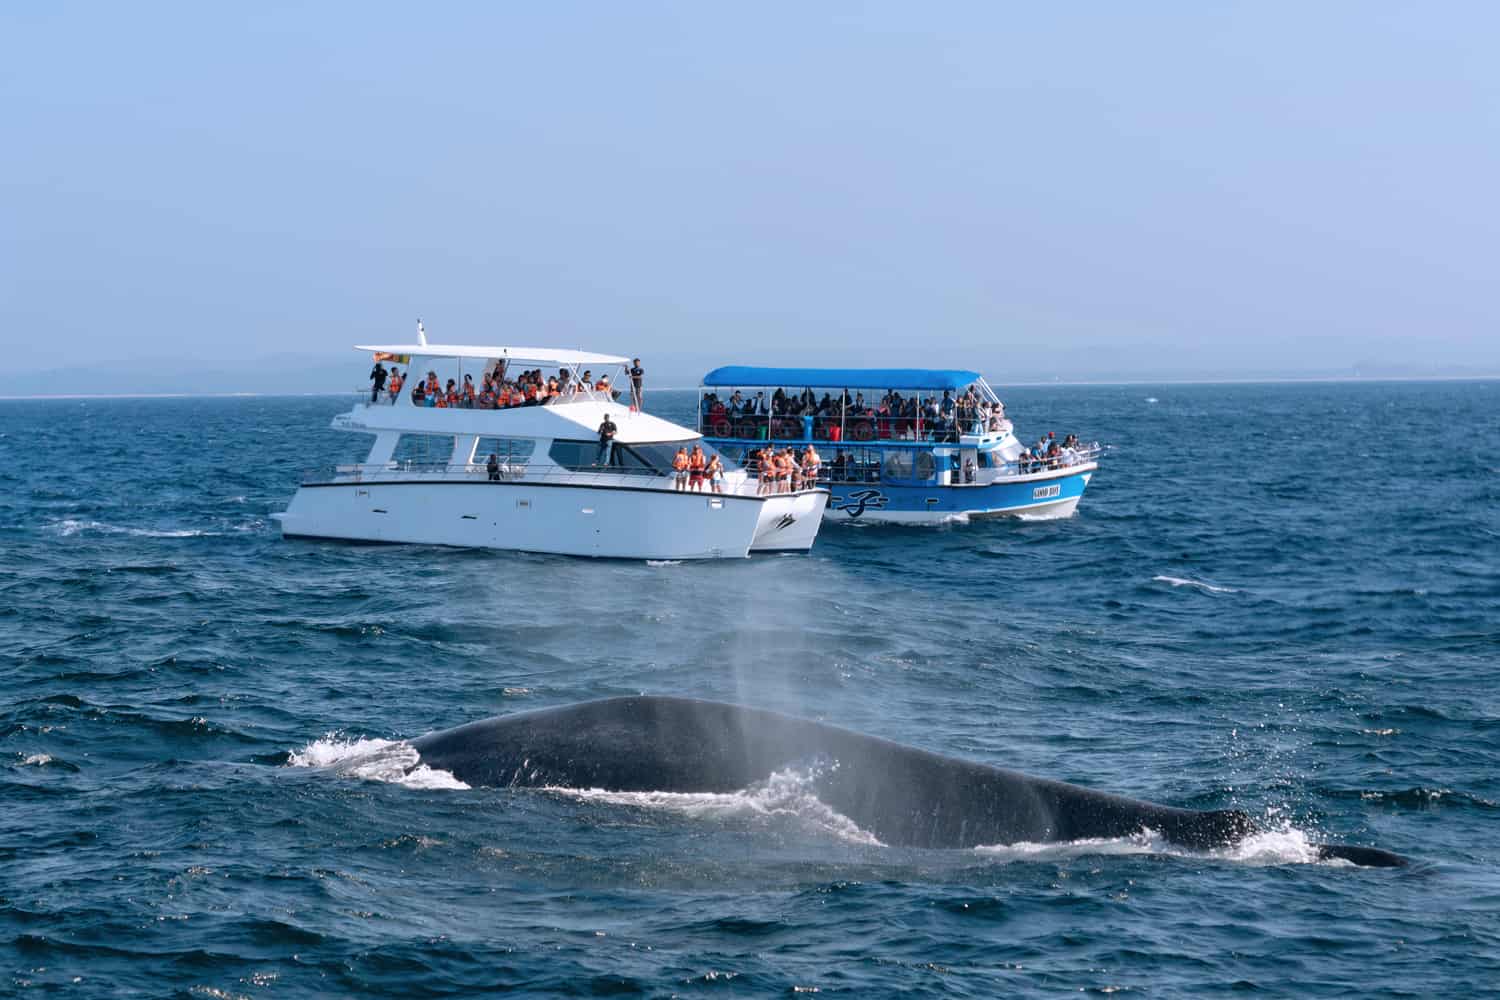 Whales in Sri Lanka